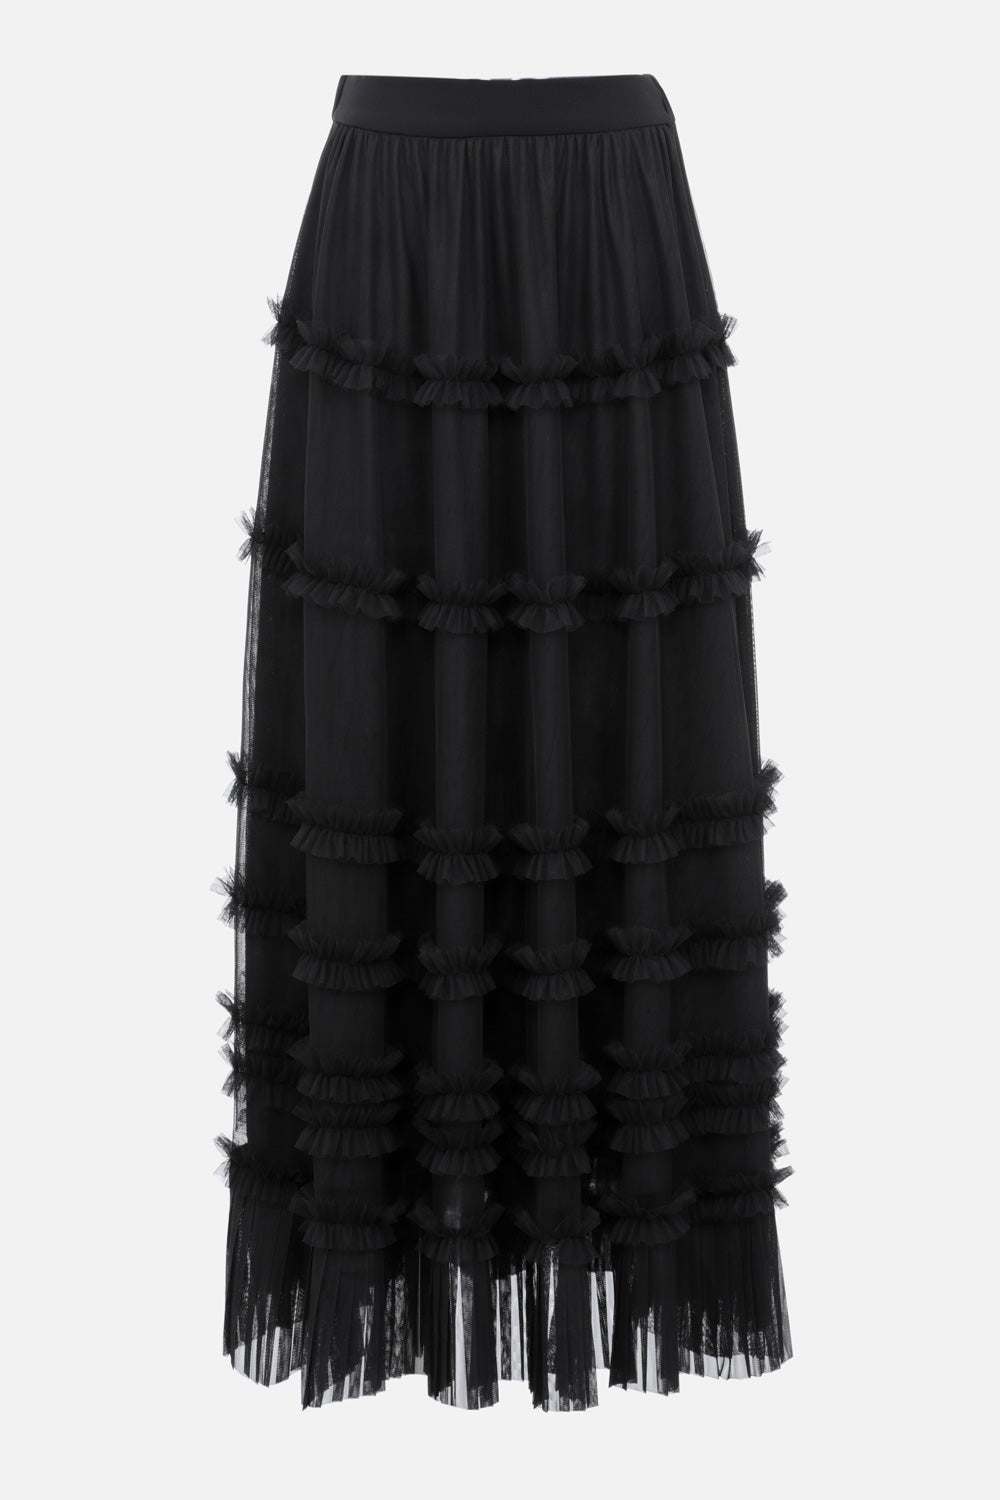 051101-599-Jupe-longue-noire-avec-doublure-transparente-Noir